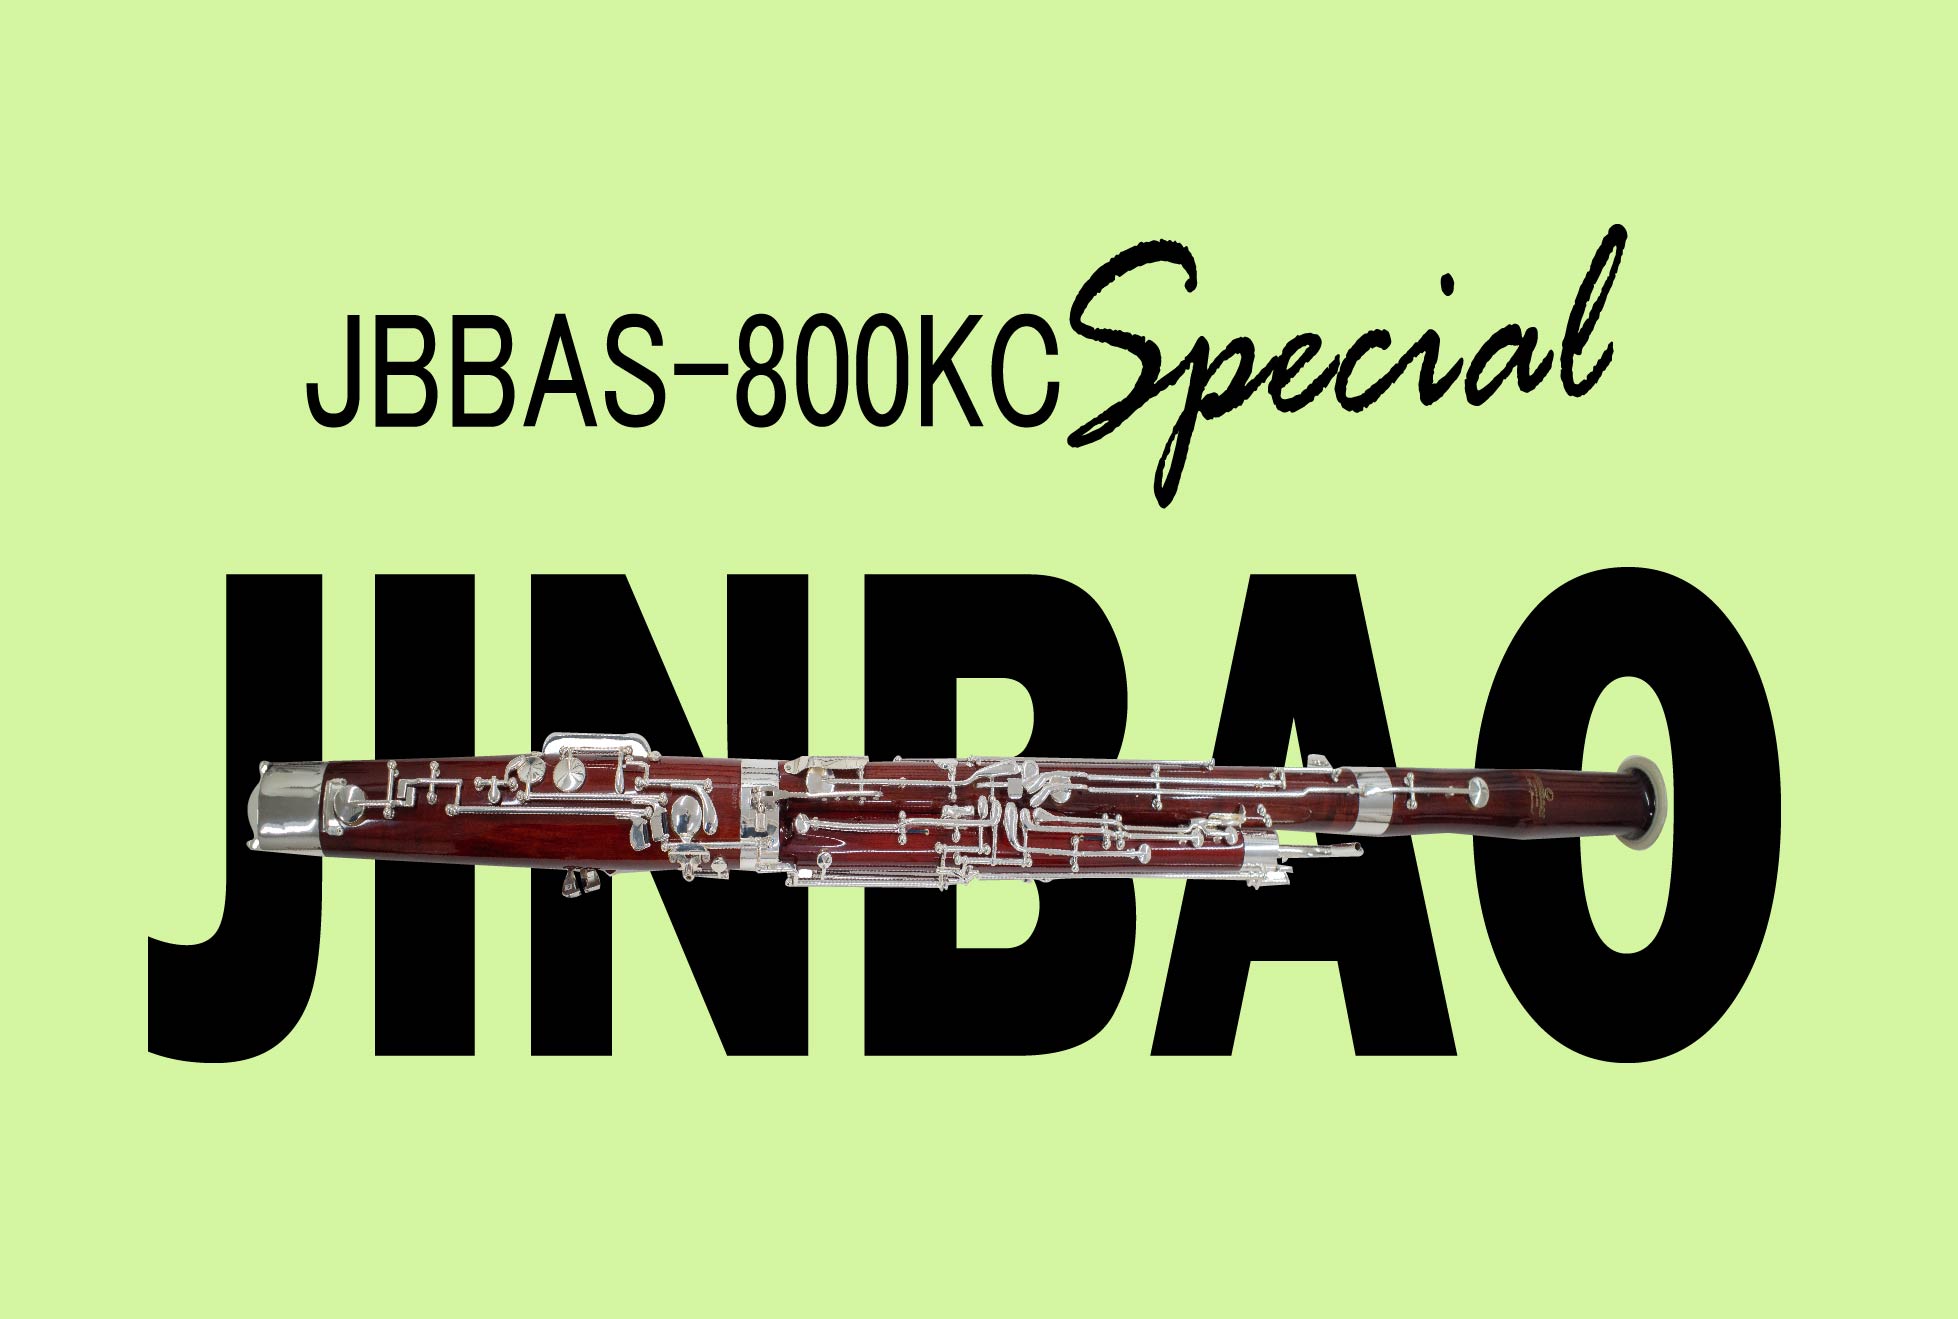 JINBAO ファゴット JBBAS-800KC-Specialのご案内